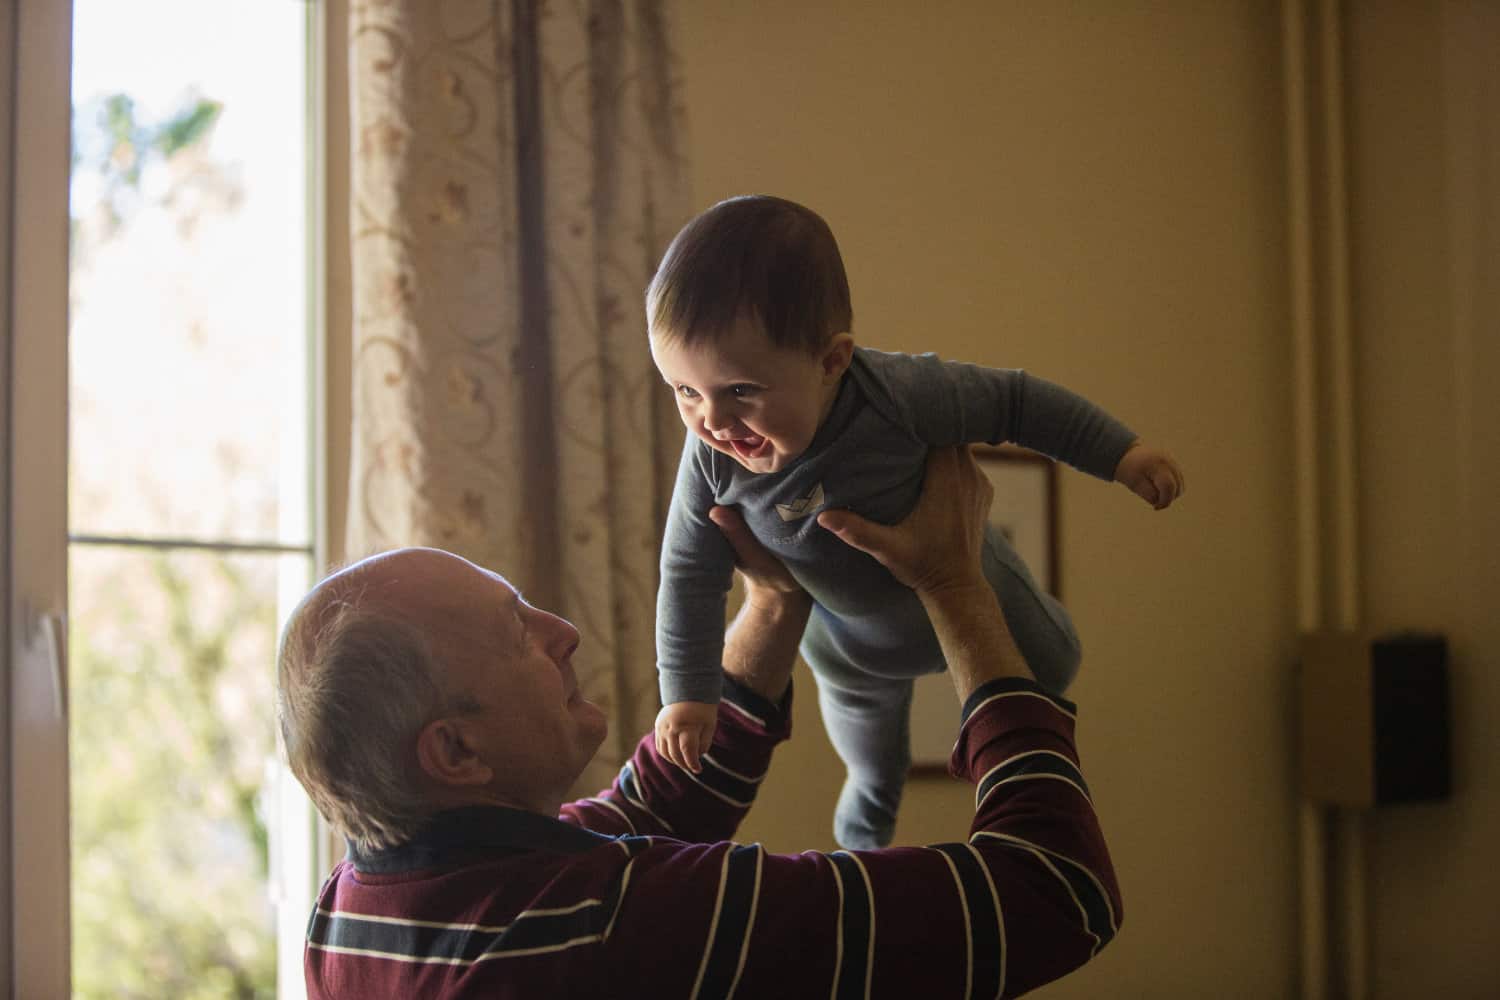 A grandpa holding up his grandchild